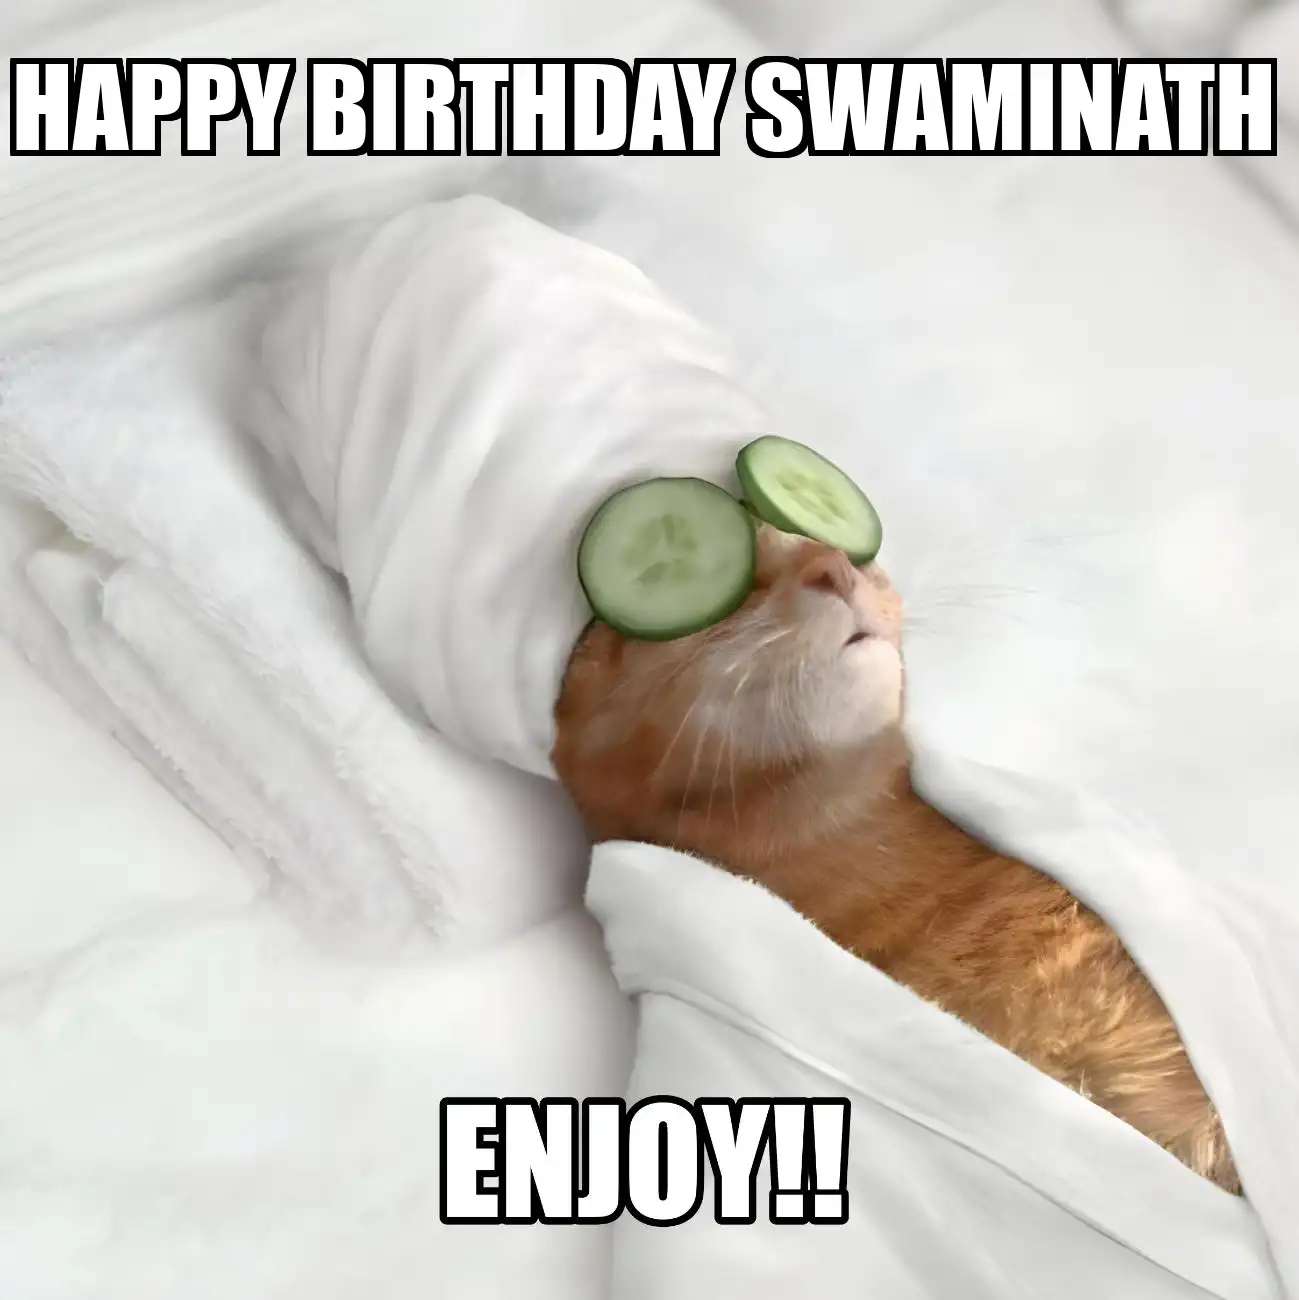 Happy Birthday Swaminath Enjoy Cat Meme